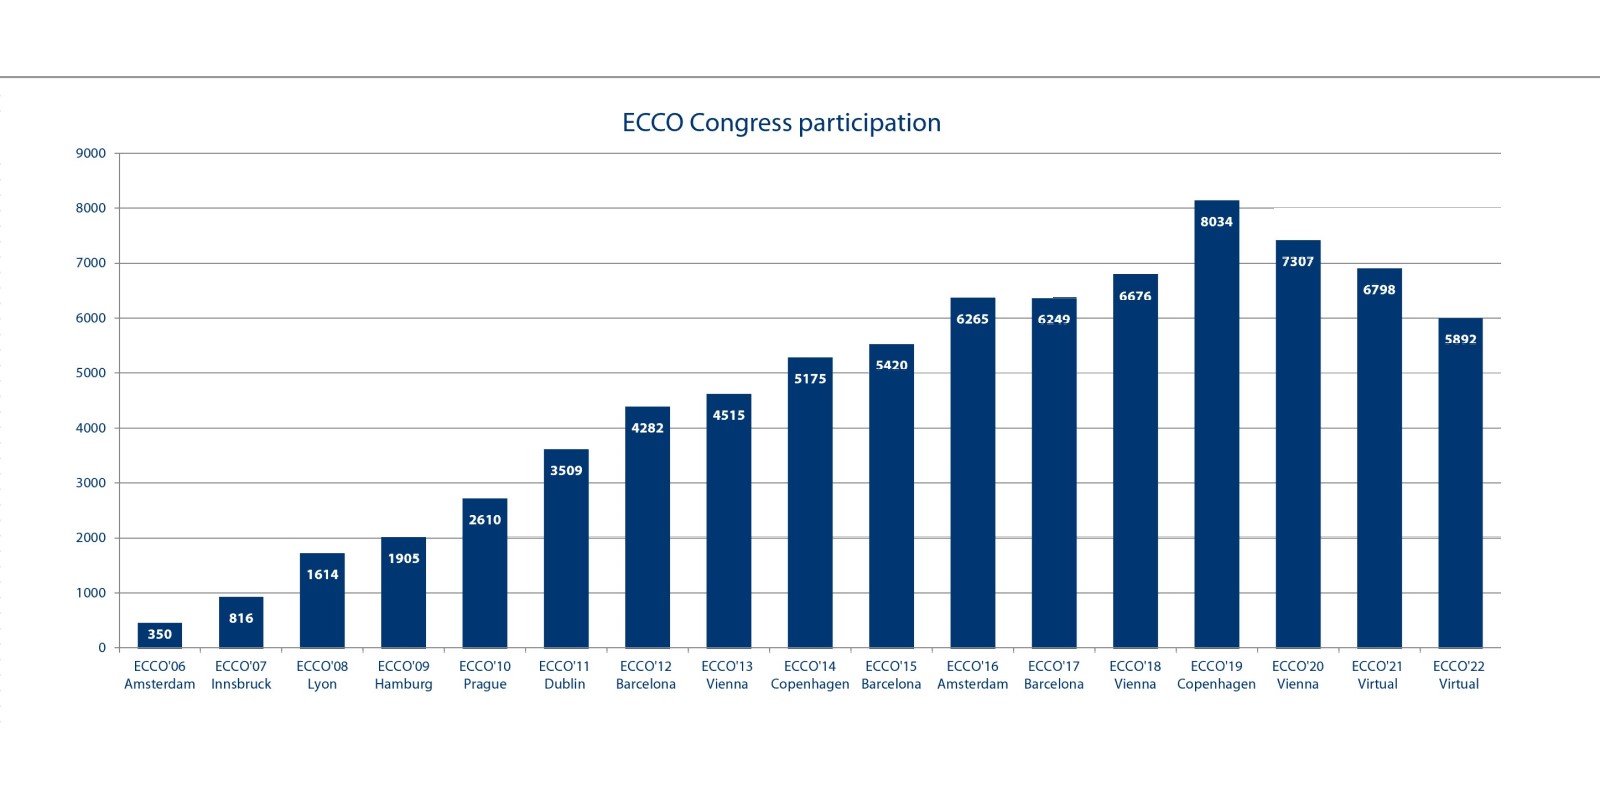 ECCO’22 Virtual - Congress participants 5892